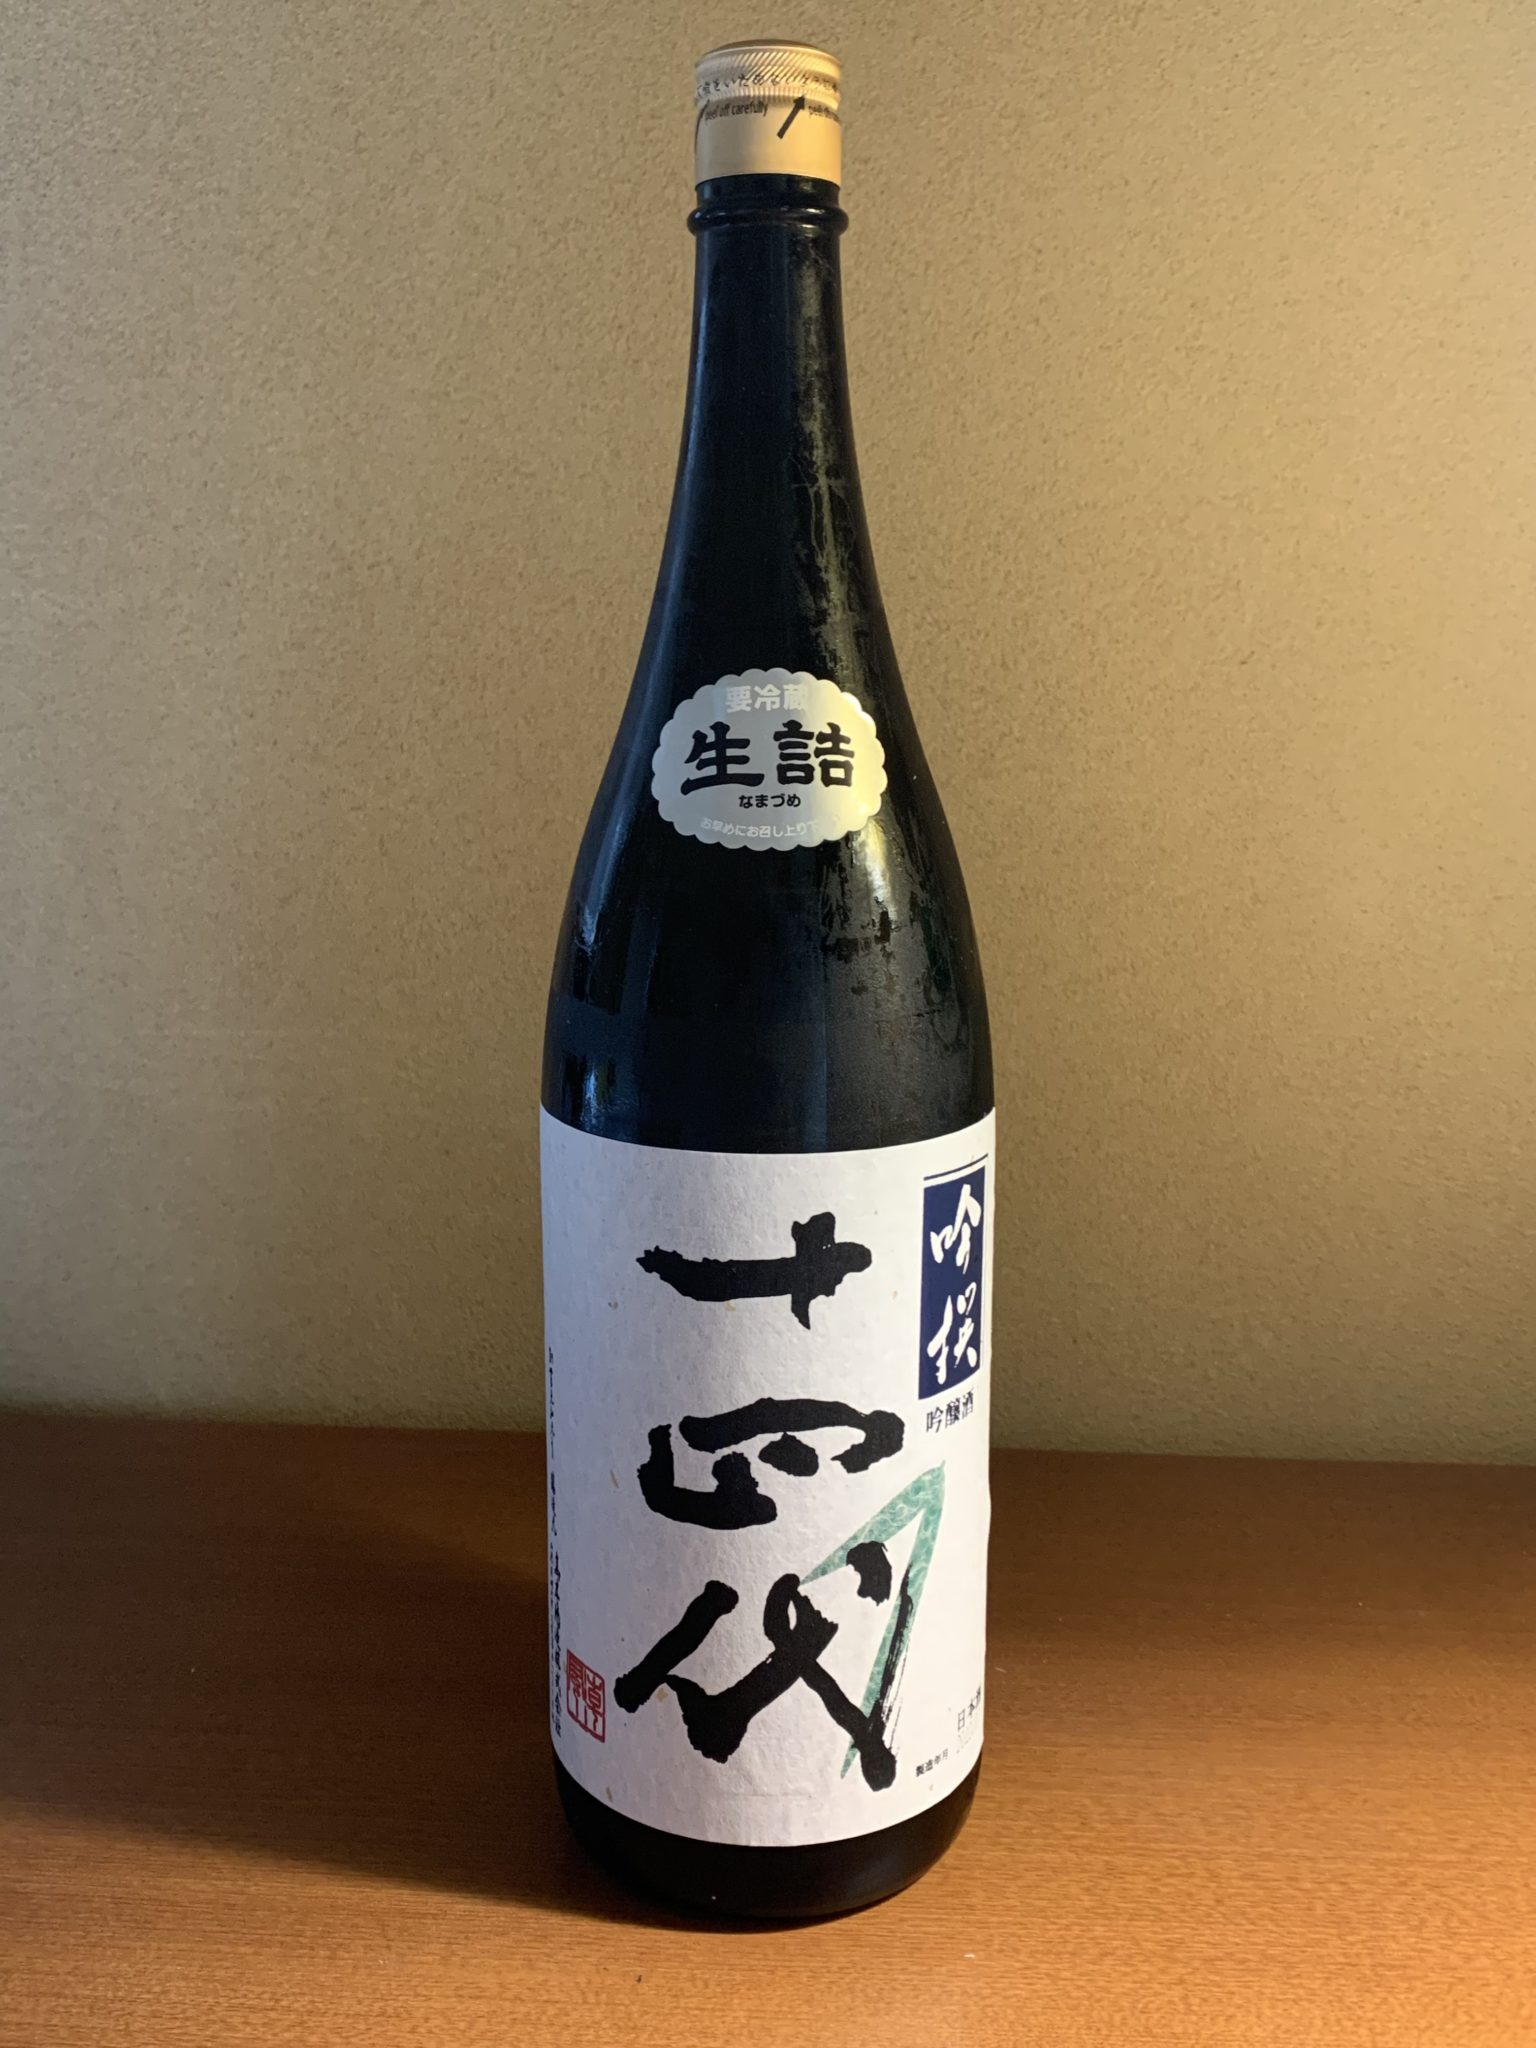 山形の十四代 吟撰 は、フレッシュな吟醸香とスッキリ爽快な喉越し | 日本酒探訪